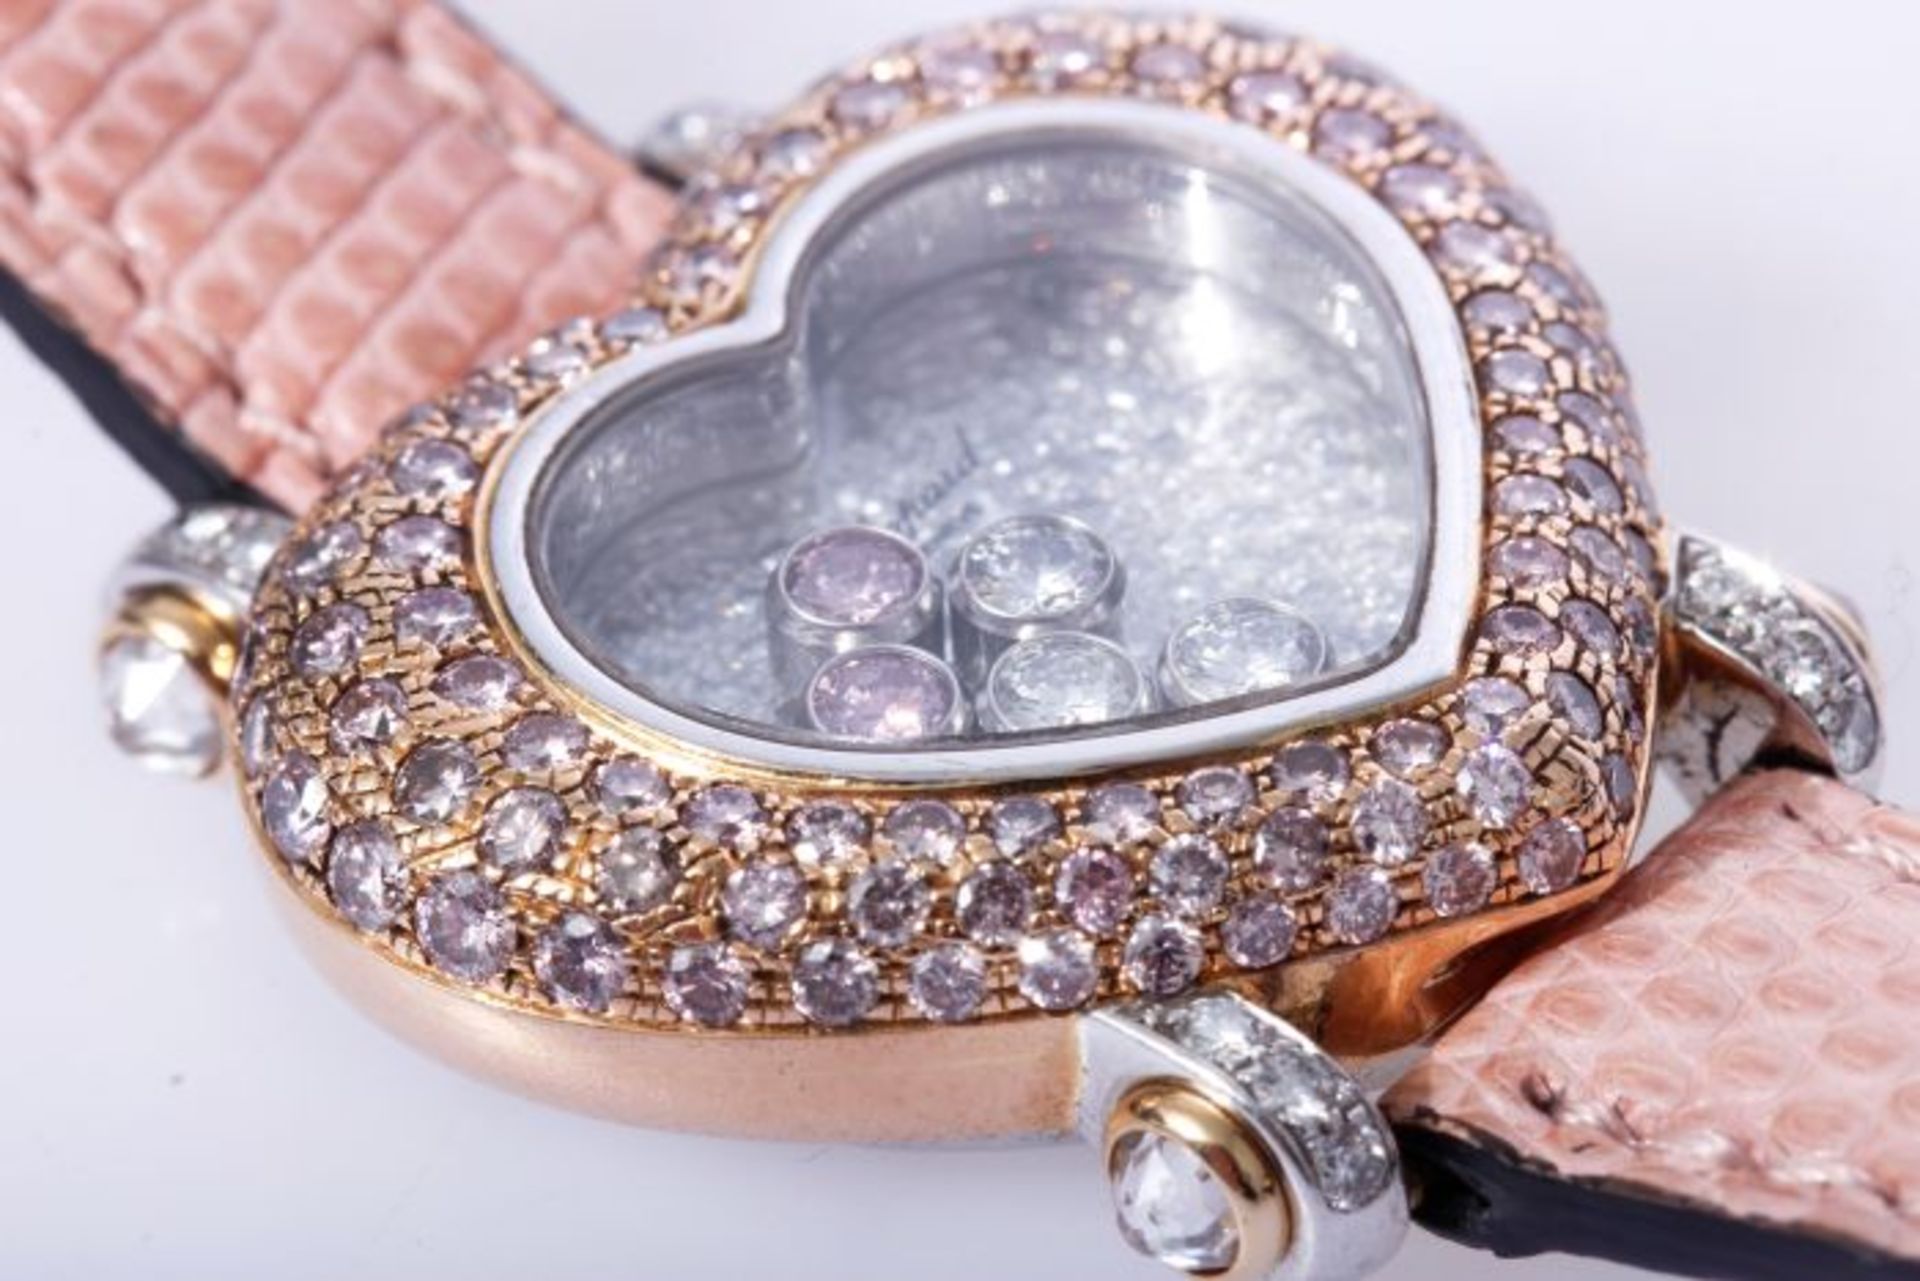 Chopard Happy Diamonds Uhr mit 2,43ct. pinken Brillanten NP 102.780 Euro750 Weiß- und Roségold. - Bild 2 aus 7